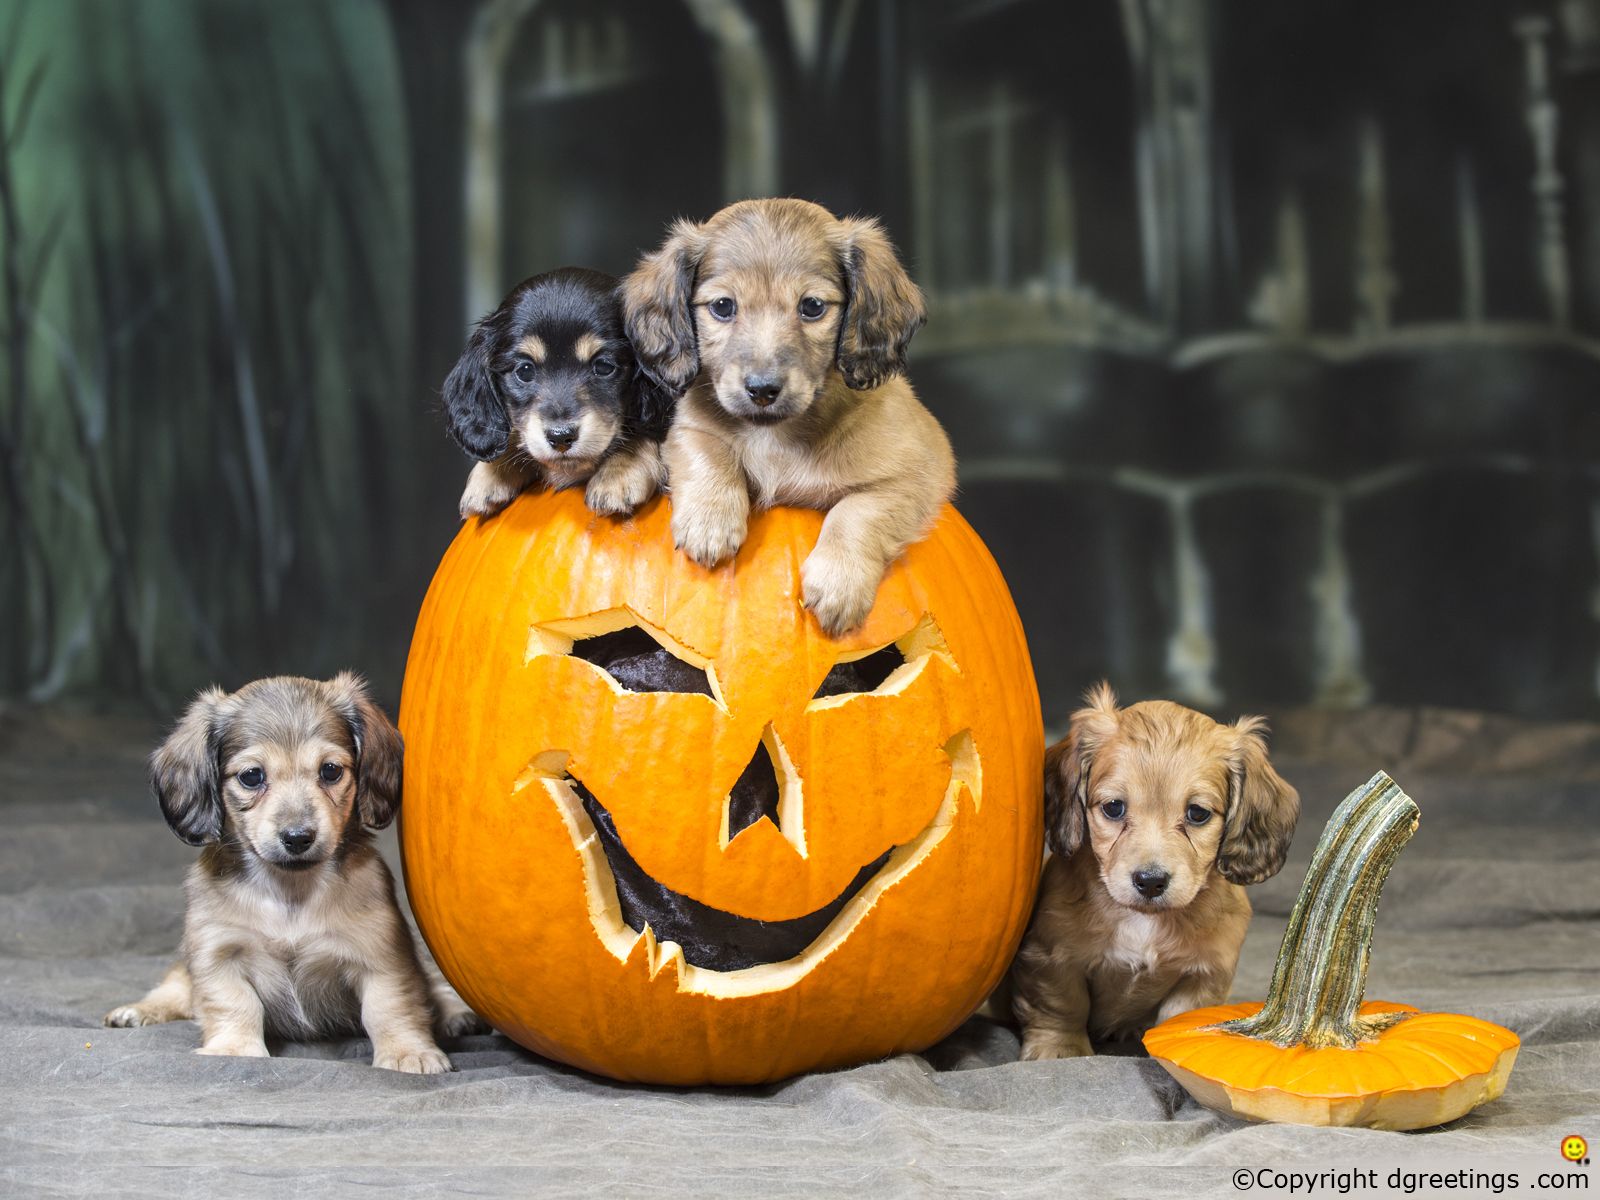 38631 Halloween Dog Images Stock Photos  Vectors  Shutterstock